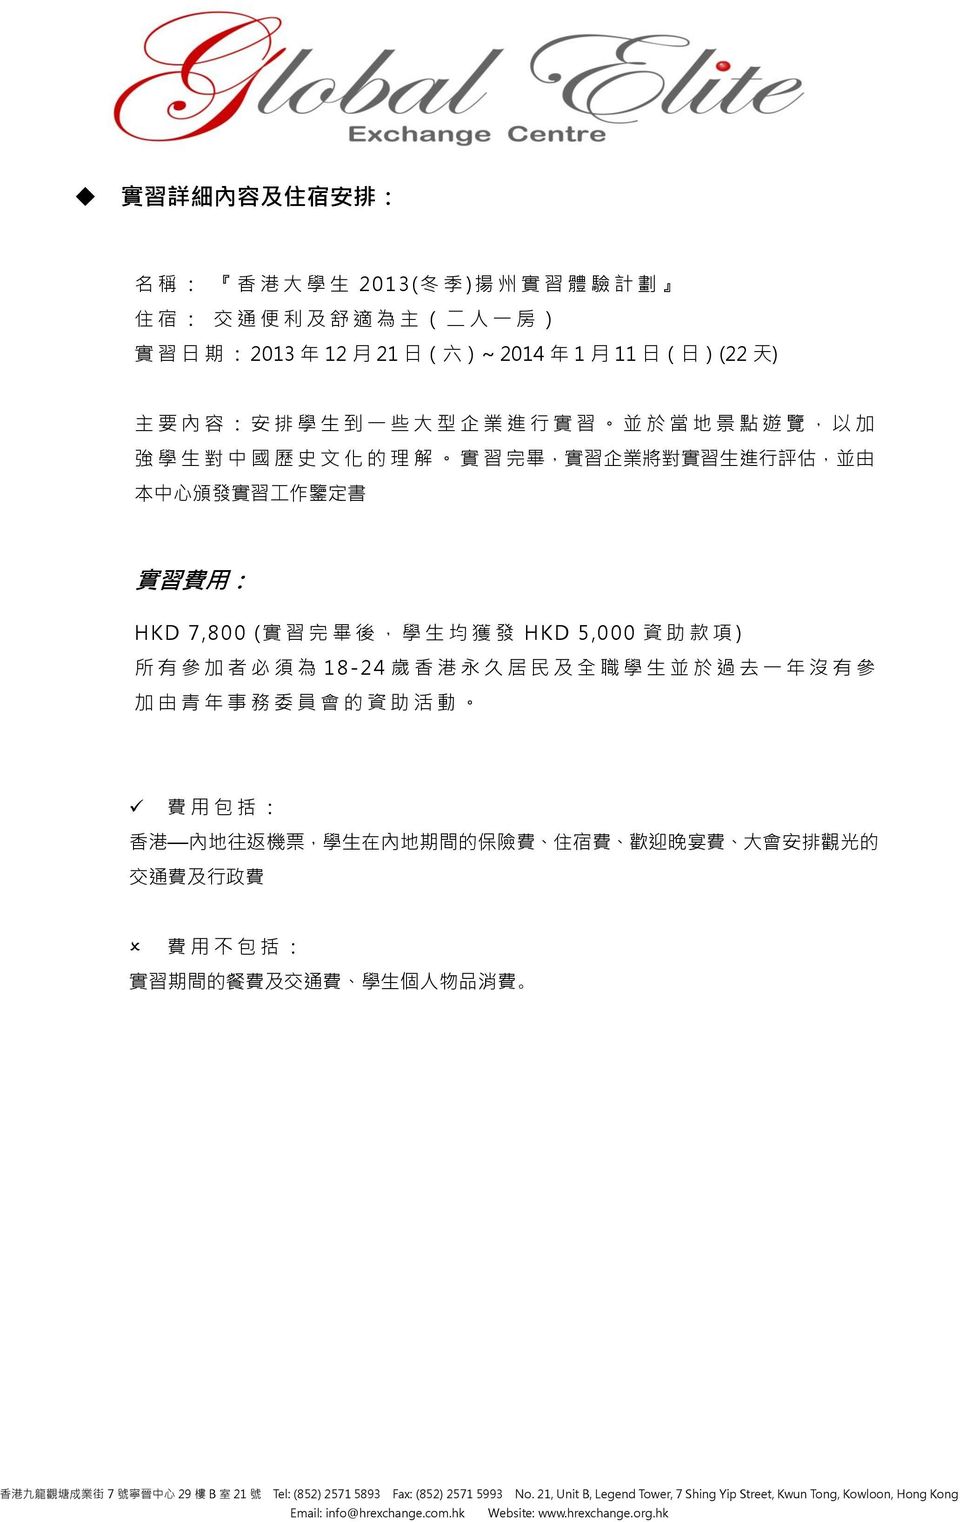 工 作 鑒 定 書 實 習 費 用 : HKD 7,800 ( 實 習 完 畢 後, 學 生 均 獲 發 HKD 5,000 資 助 款 項 ) 所 有 參 加 者 必 須 為 18-24 歲 香 港 永 久 居 民 及 全 職 學 生 並 於 過 去 一 年 沒 有 參 加 由 青 年 事 務 委 員 會